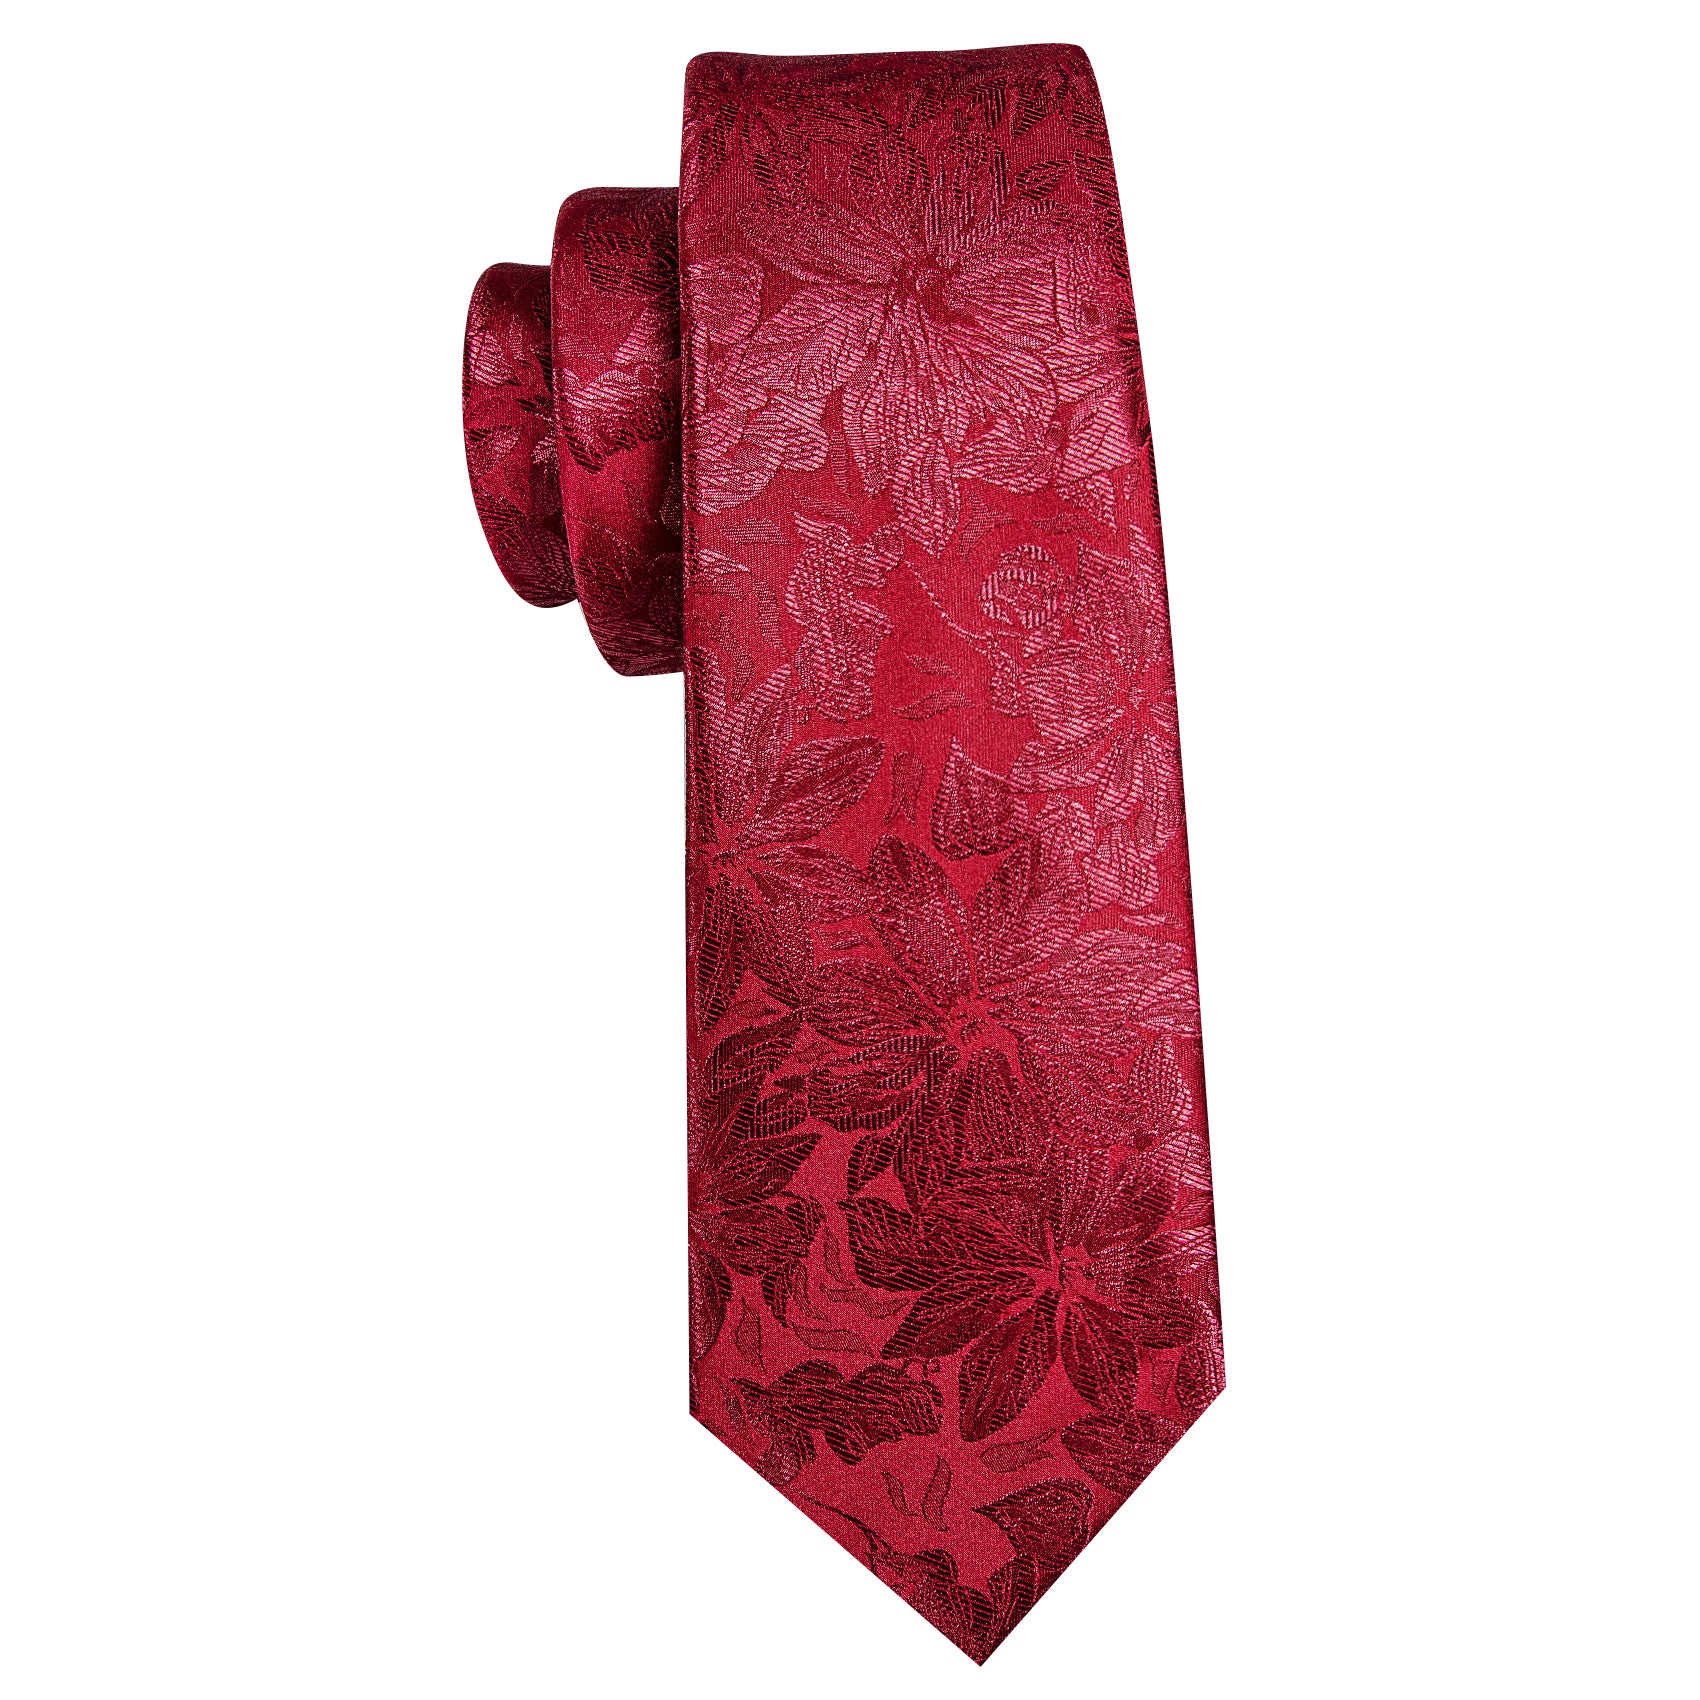 Dark Red Flower Silk Tie Handkerchief Cufflinks Set